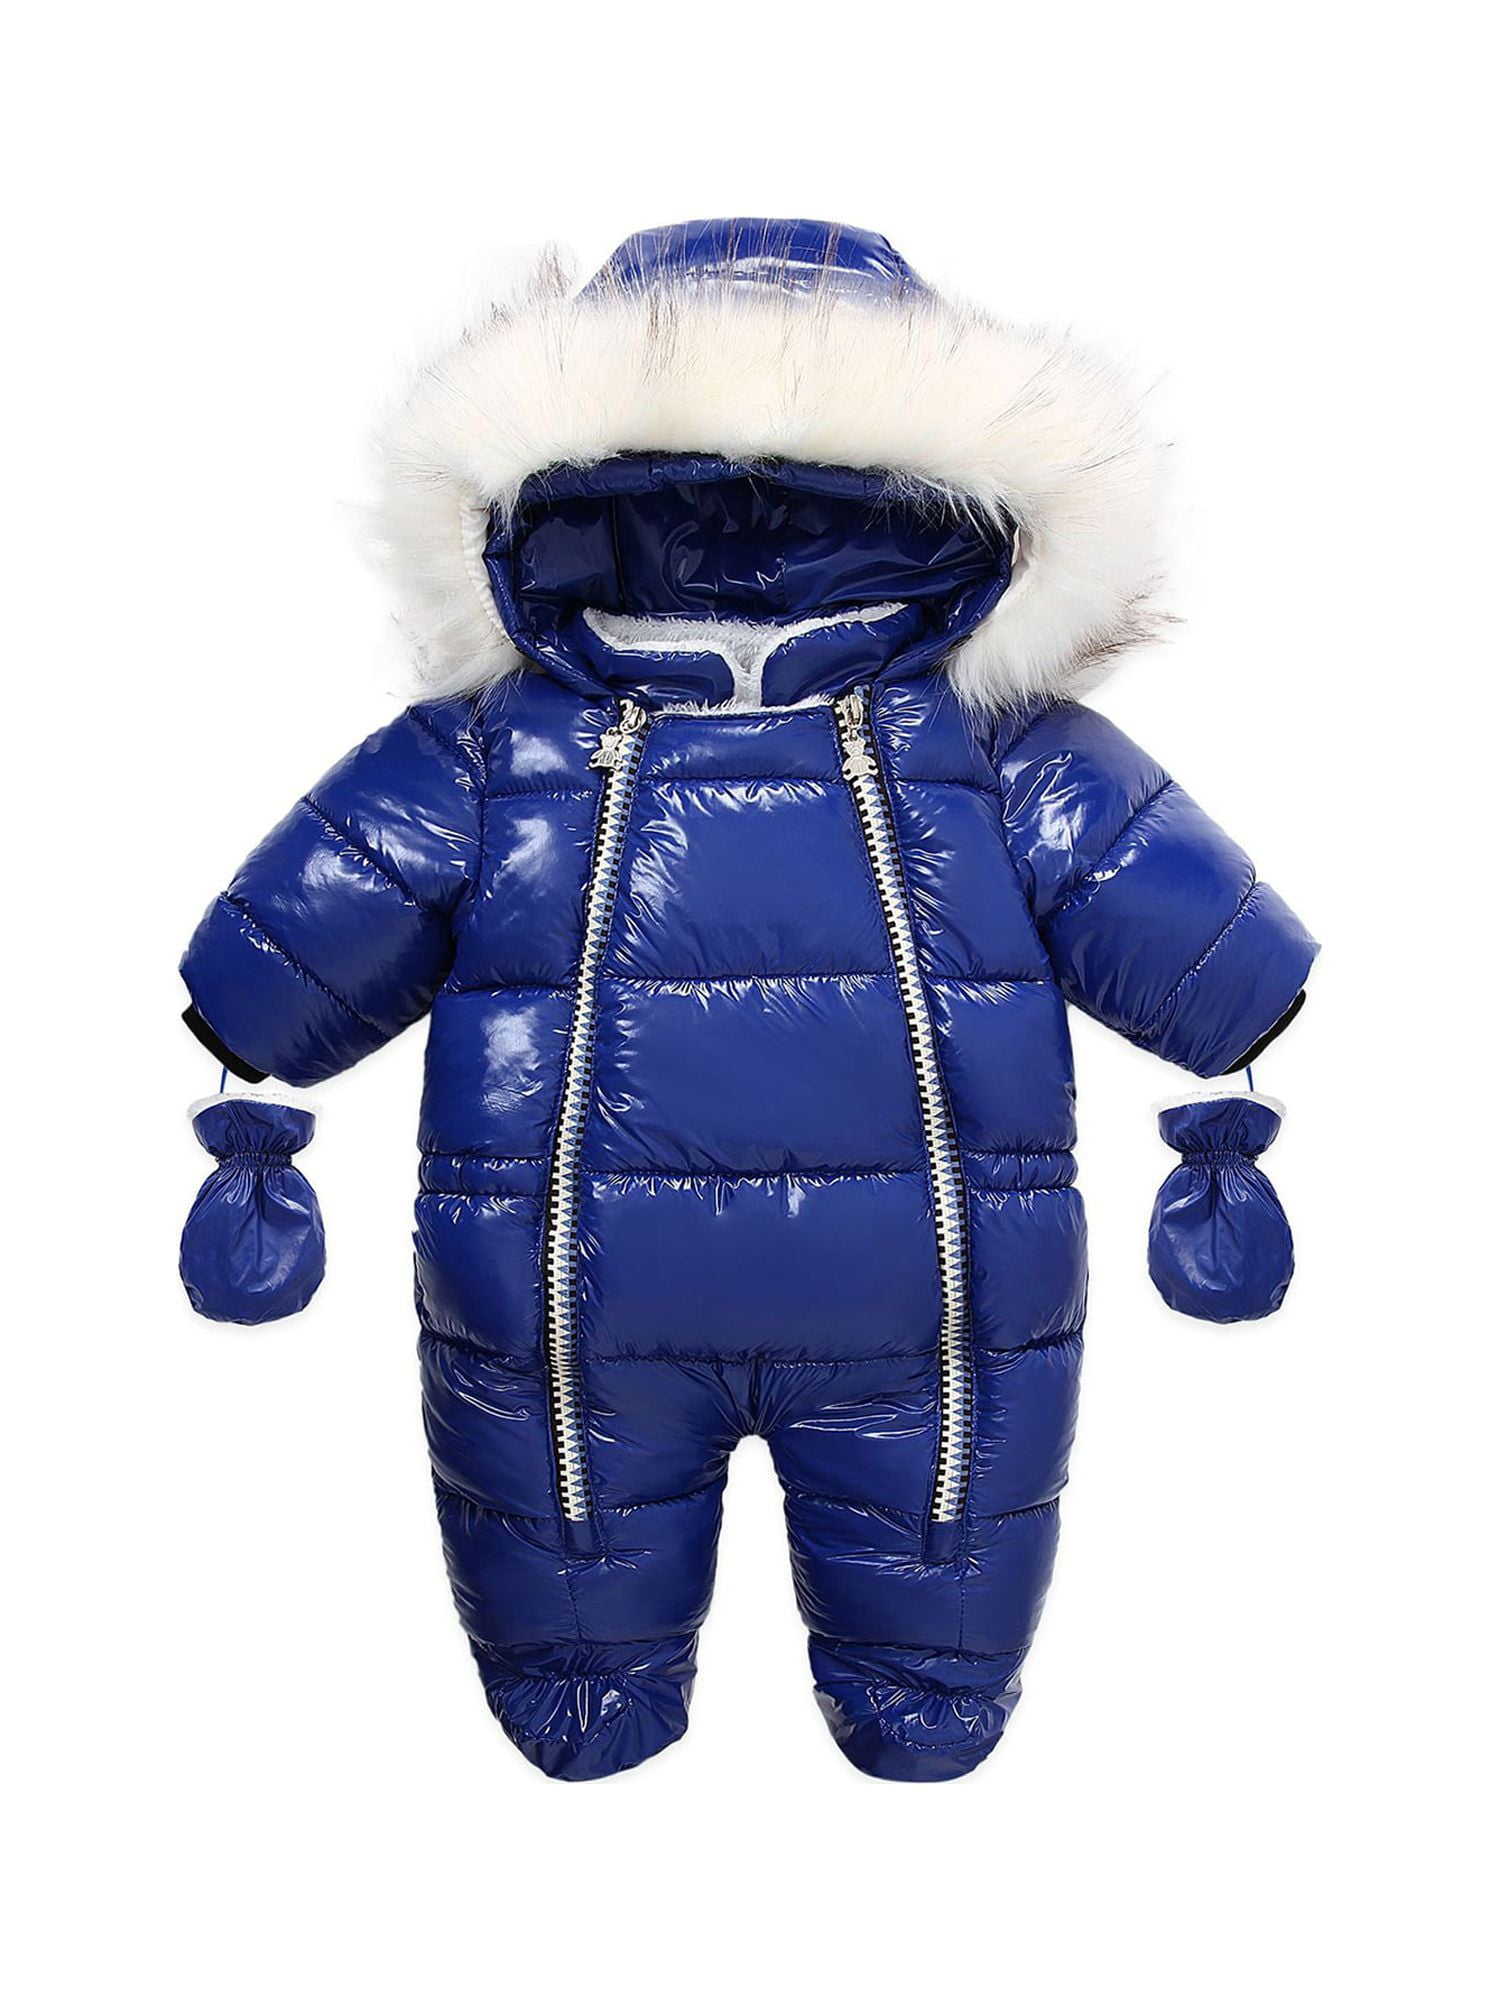 Lolmot Newborn Baby Snowsuit Bear Onesie Romper Fleece Footie Thicken  Winter Outwear Hooded Warm Jumpsuit for Girls Boys on Clearance 